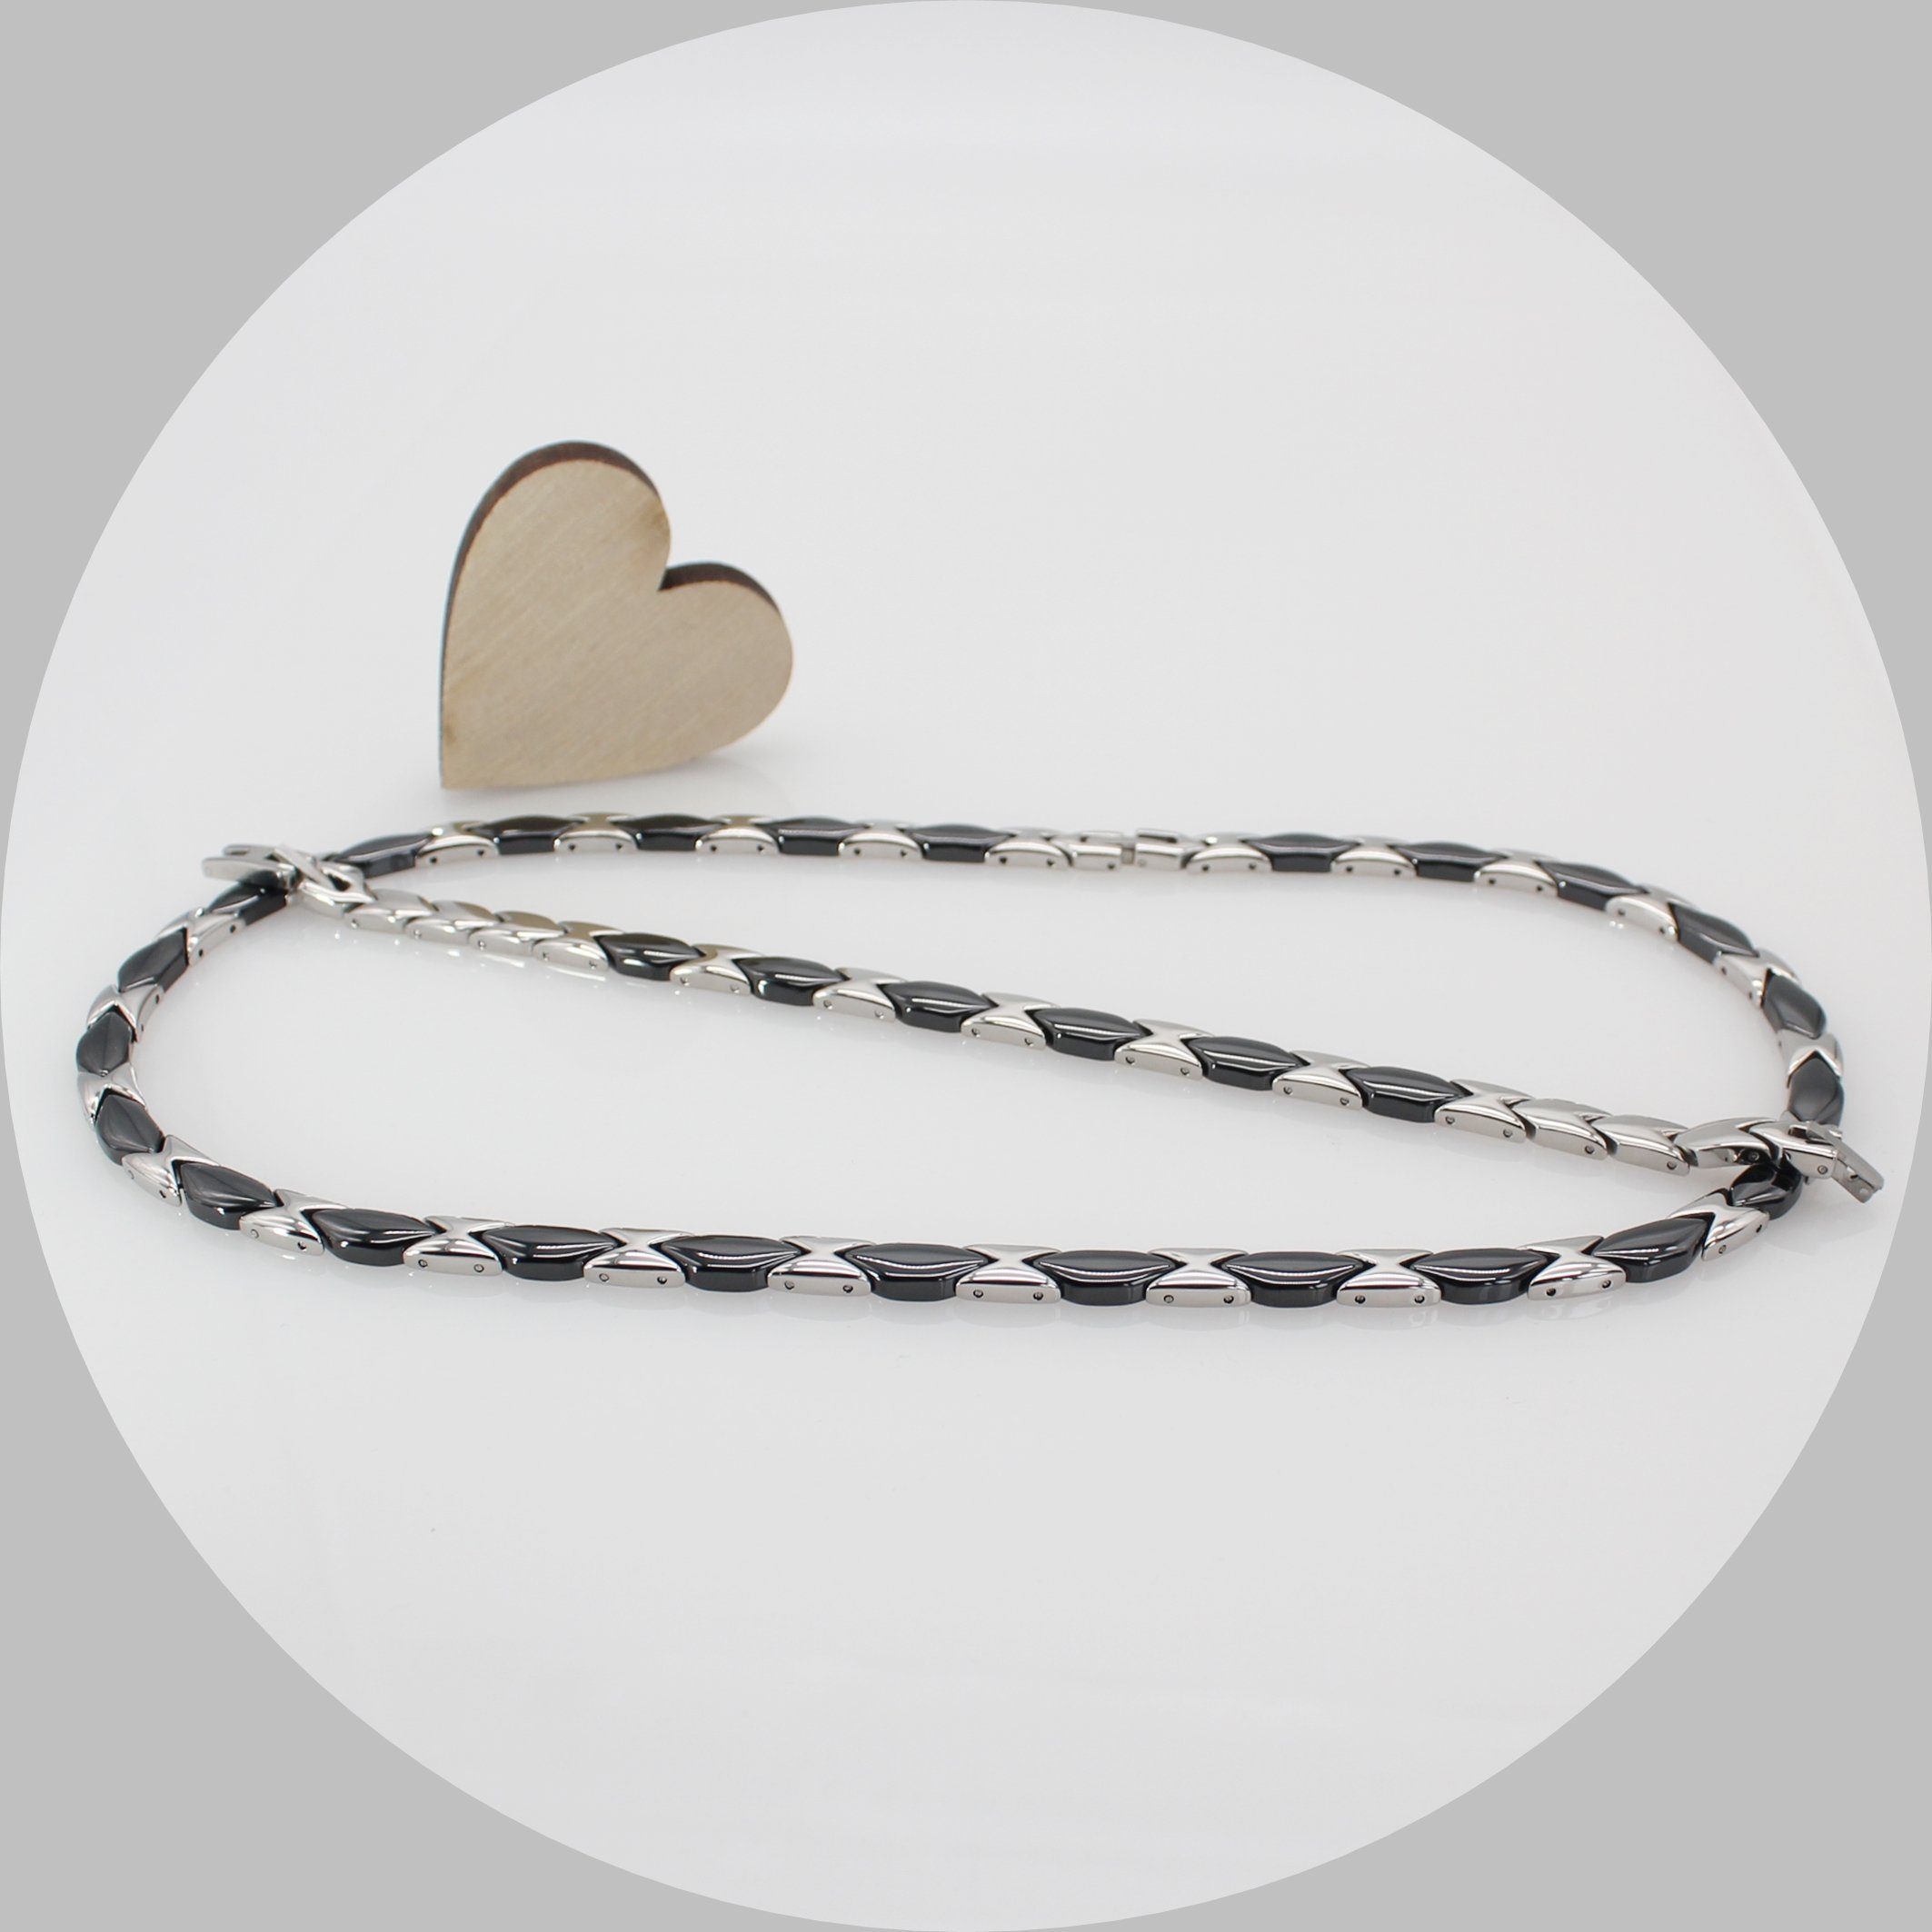 ELLAWIL Collier-Set Halskette Armband aus schwarzer Keramik mit silberfarbenen Edelstahl (Kettenlänge 49 cm, Armbandlänge 19 cm, Breite 6 mm), inklusive Geschenkschachtel